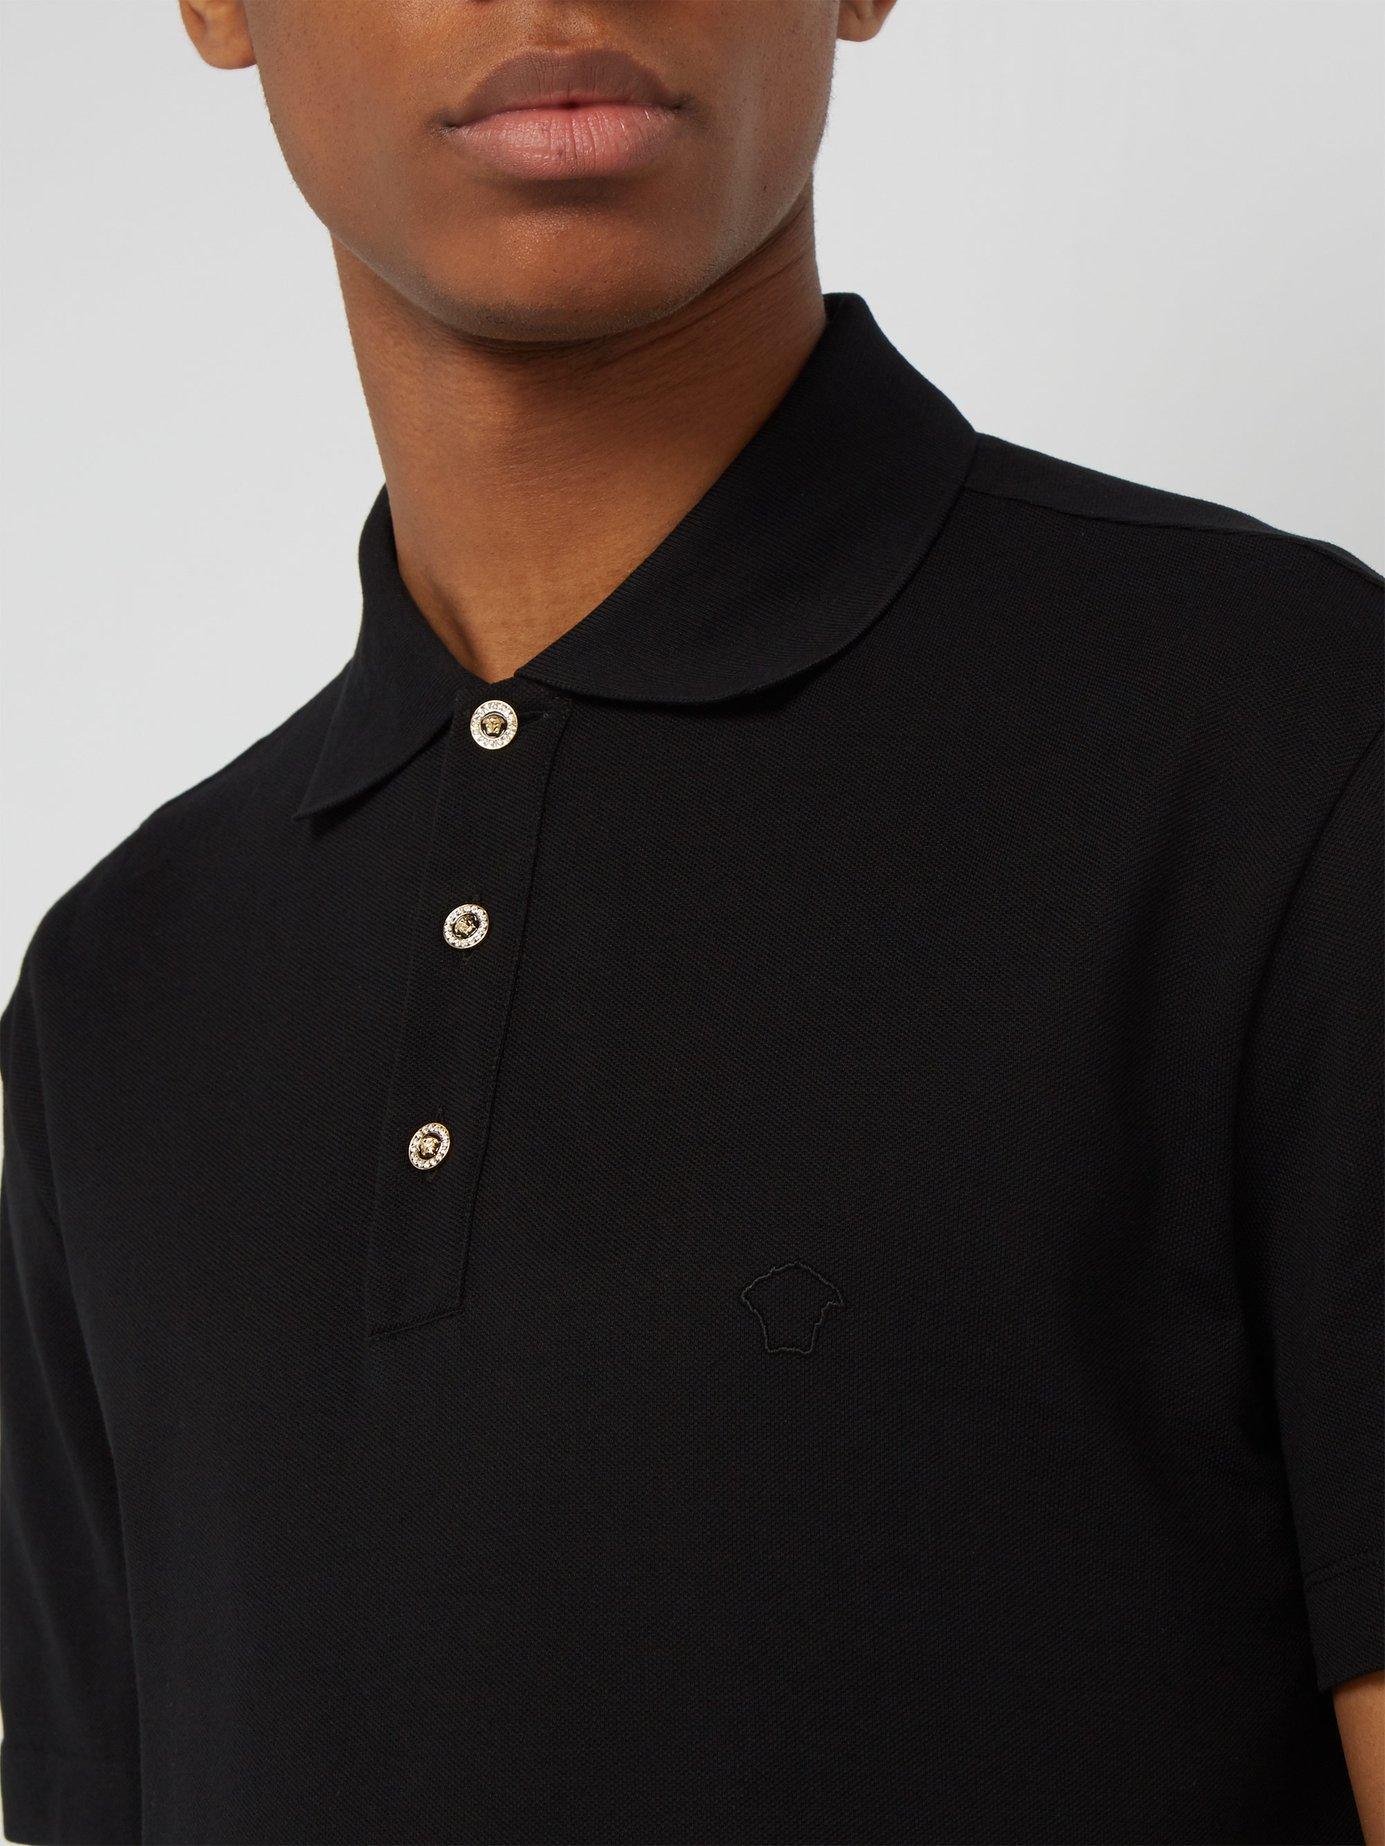 Versace Medusa Crystal Button Cotton Piqué Polo Shirt in Black for Men ...